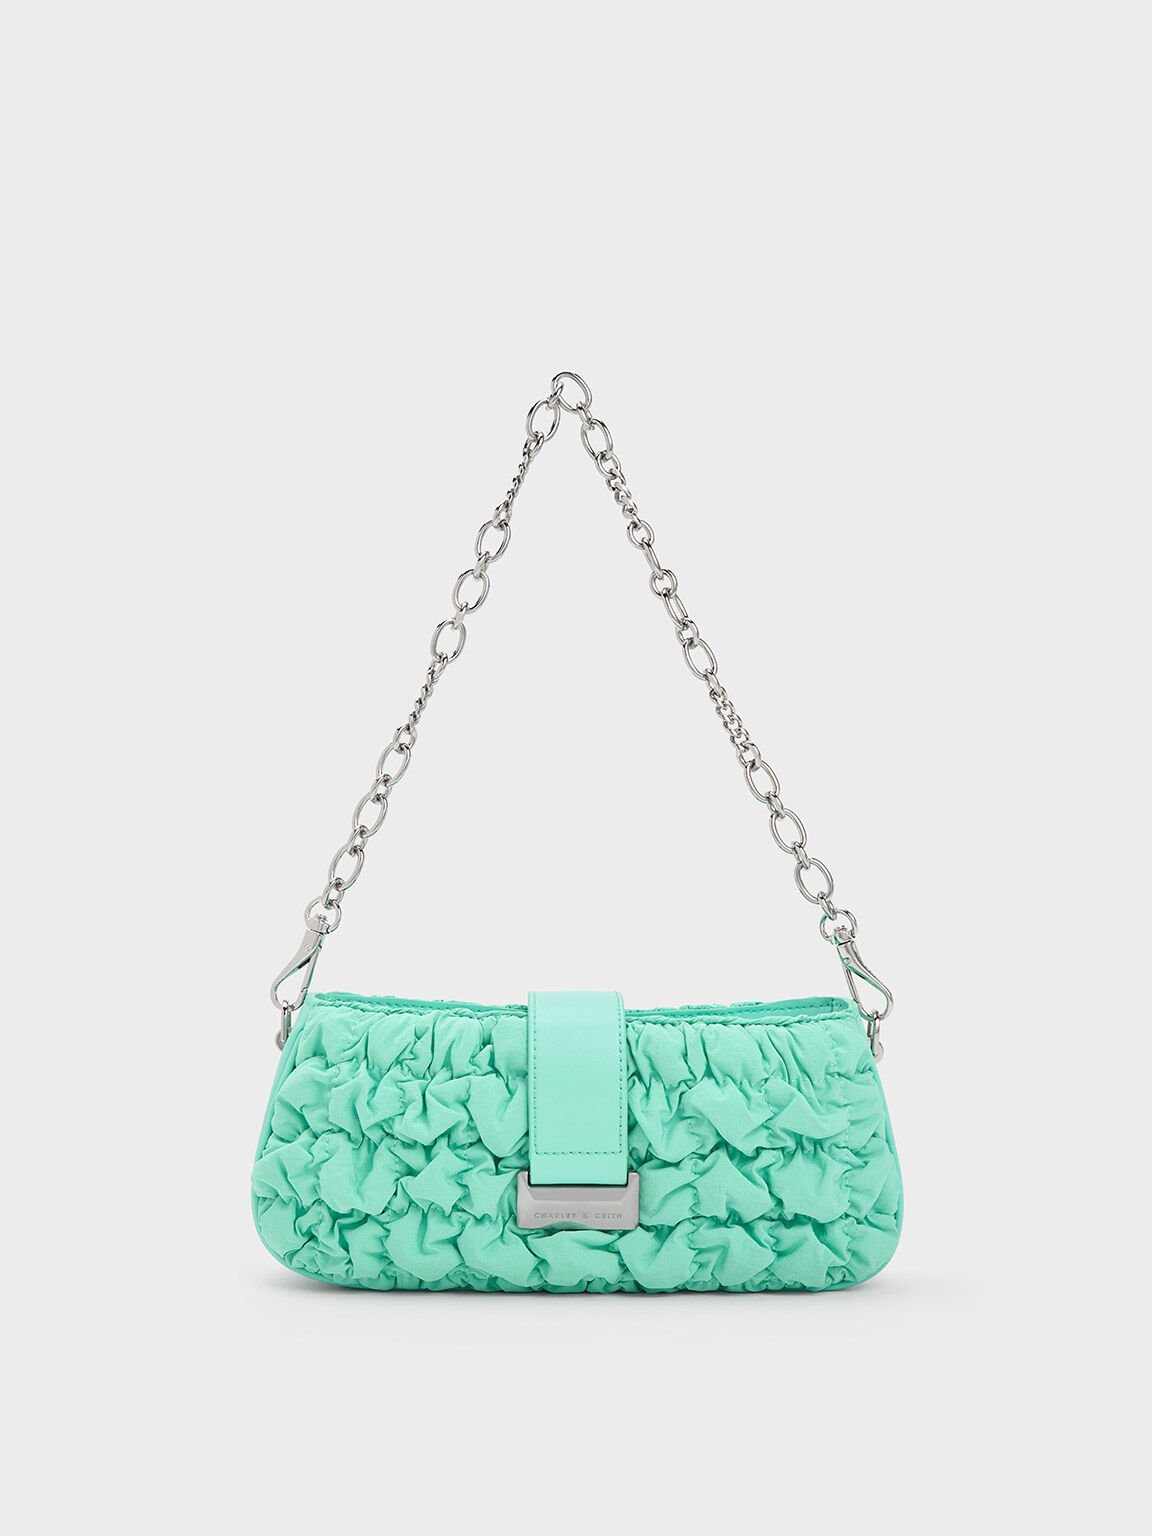 Cady Clutch - GREENCADY Clutch - Green Handbag